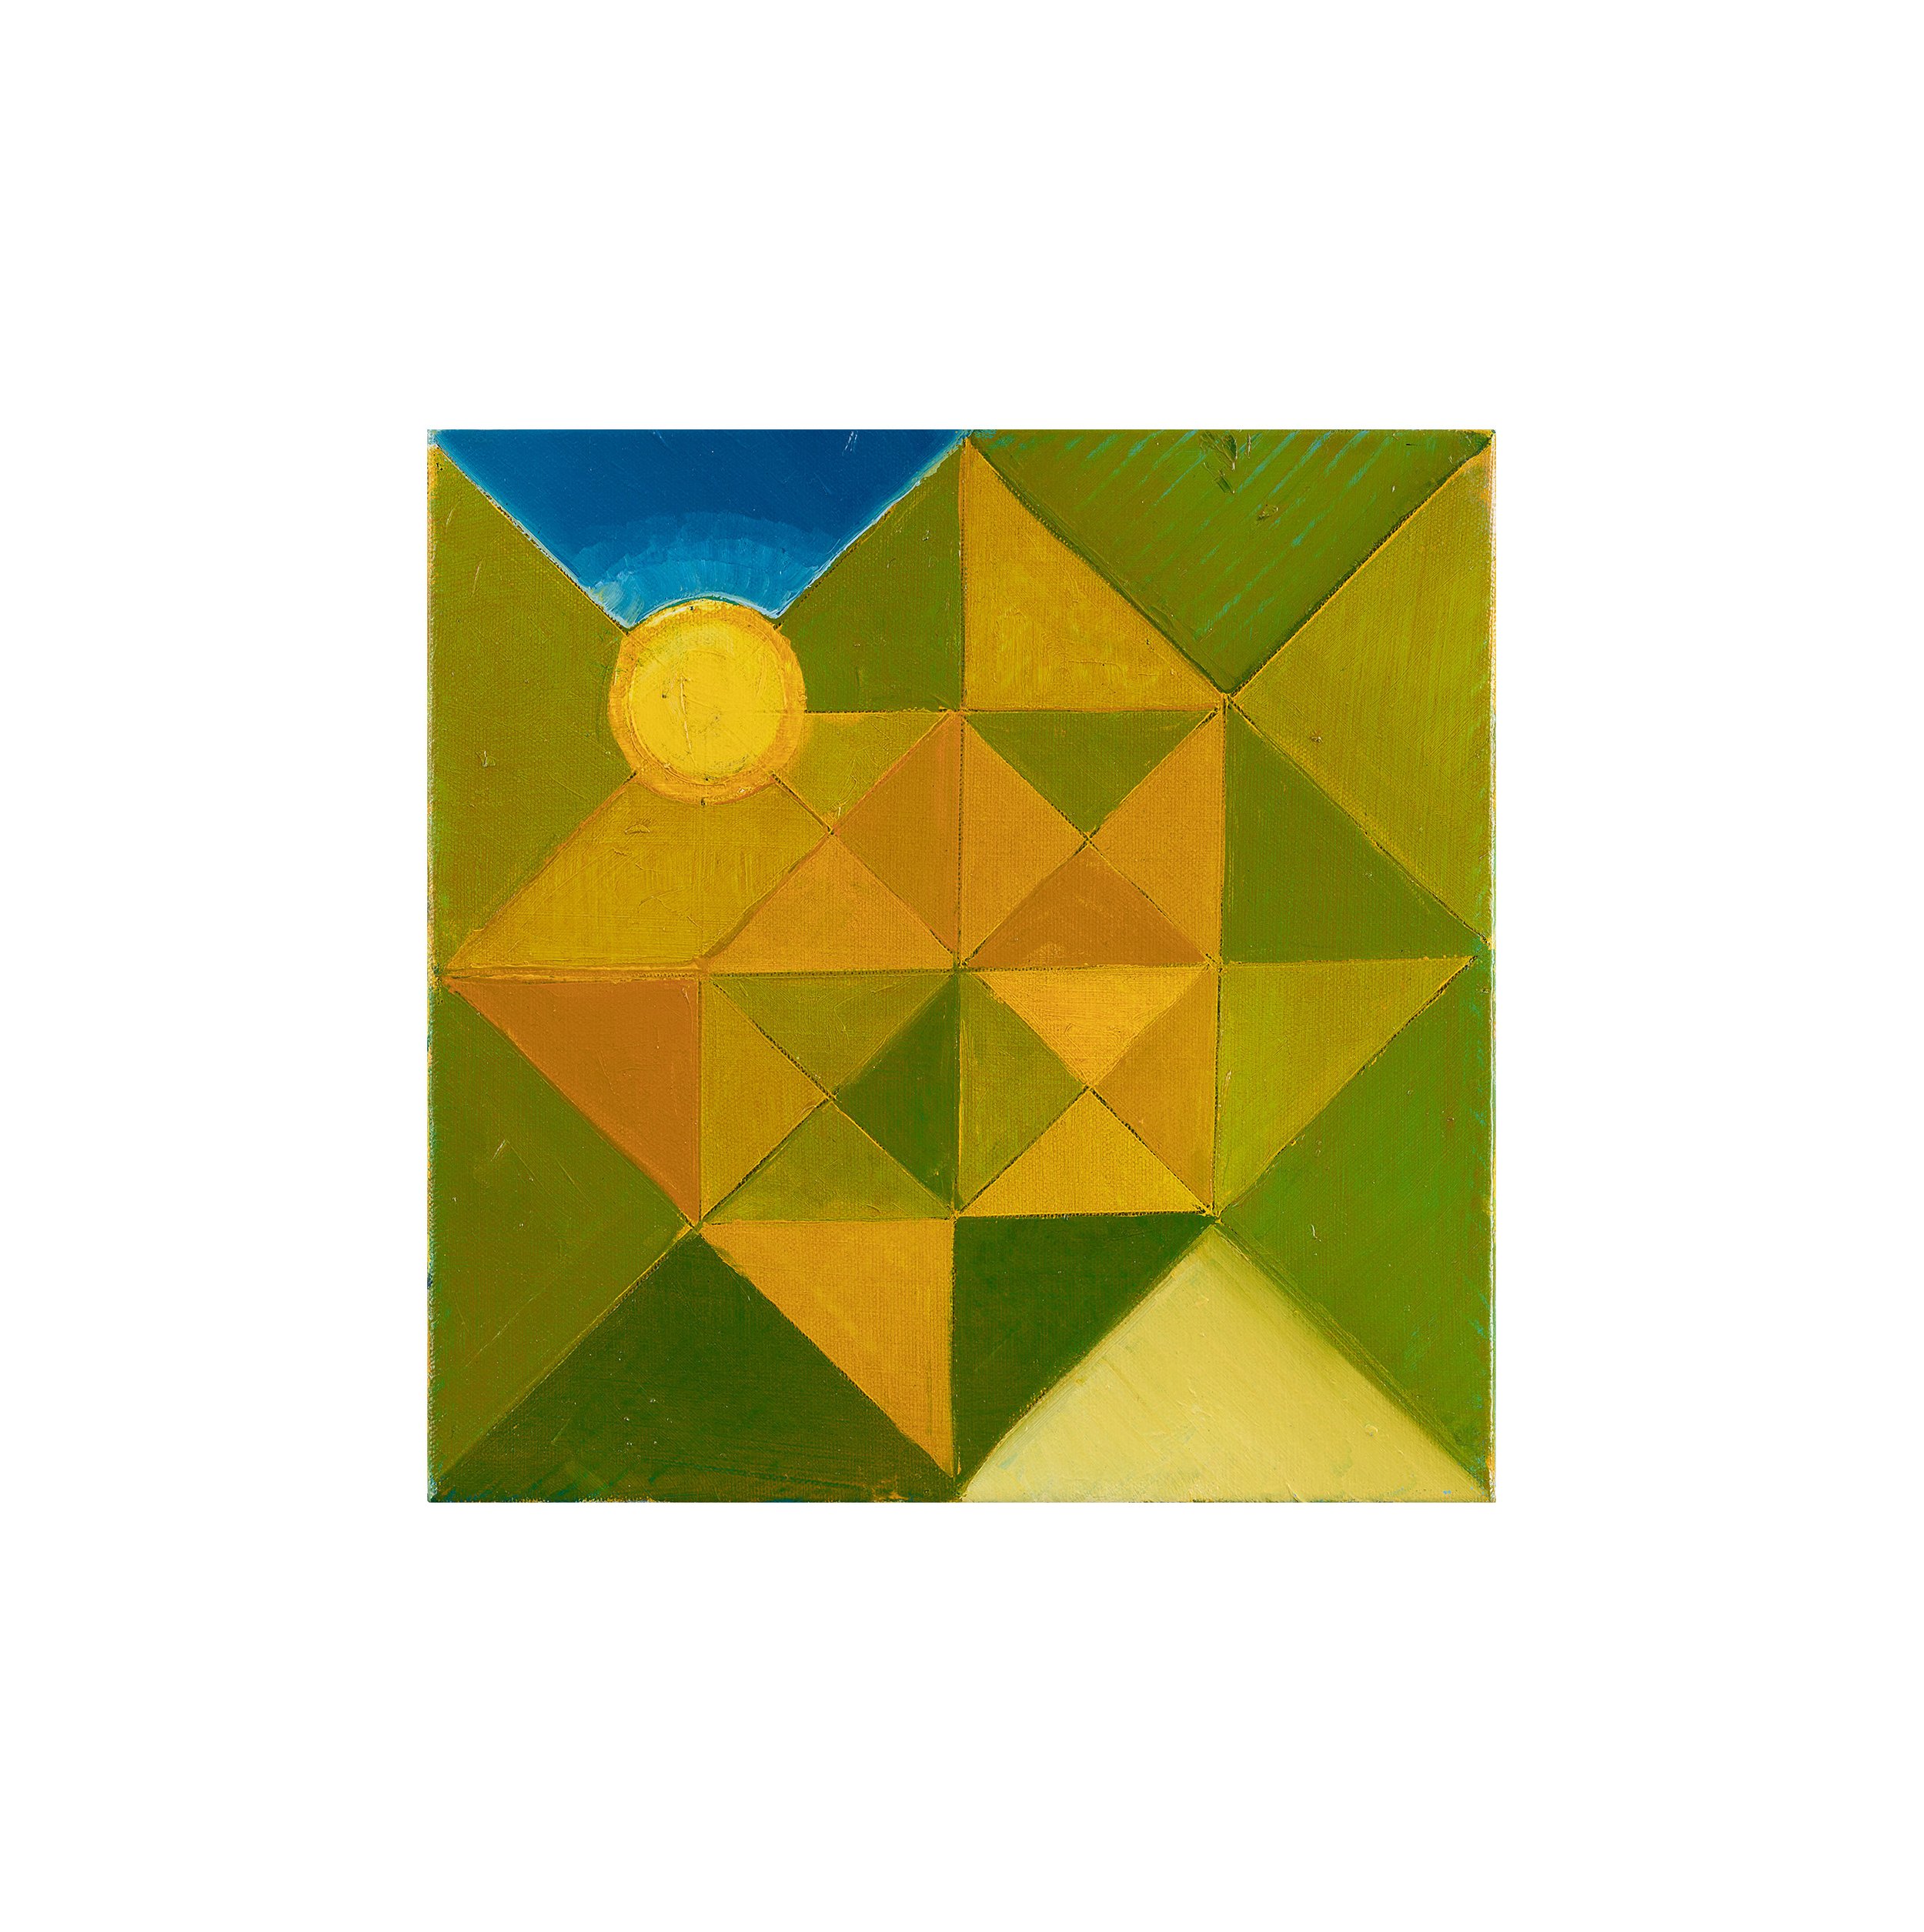   Sun, (2022)   oil on canvas 30x30 cm  